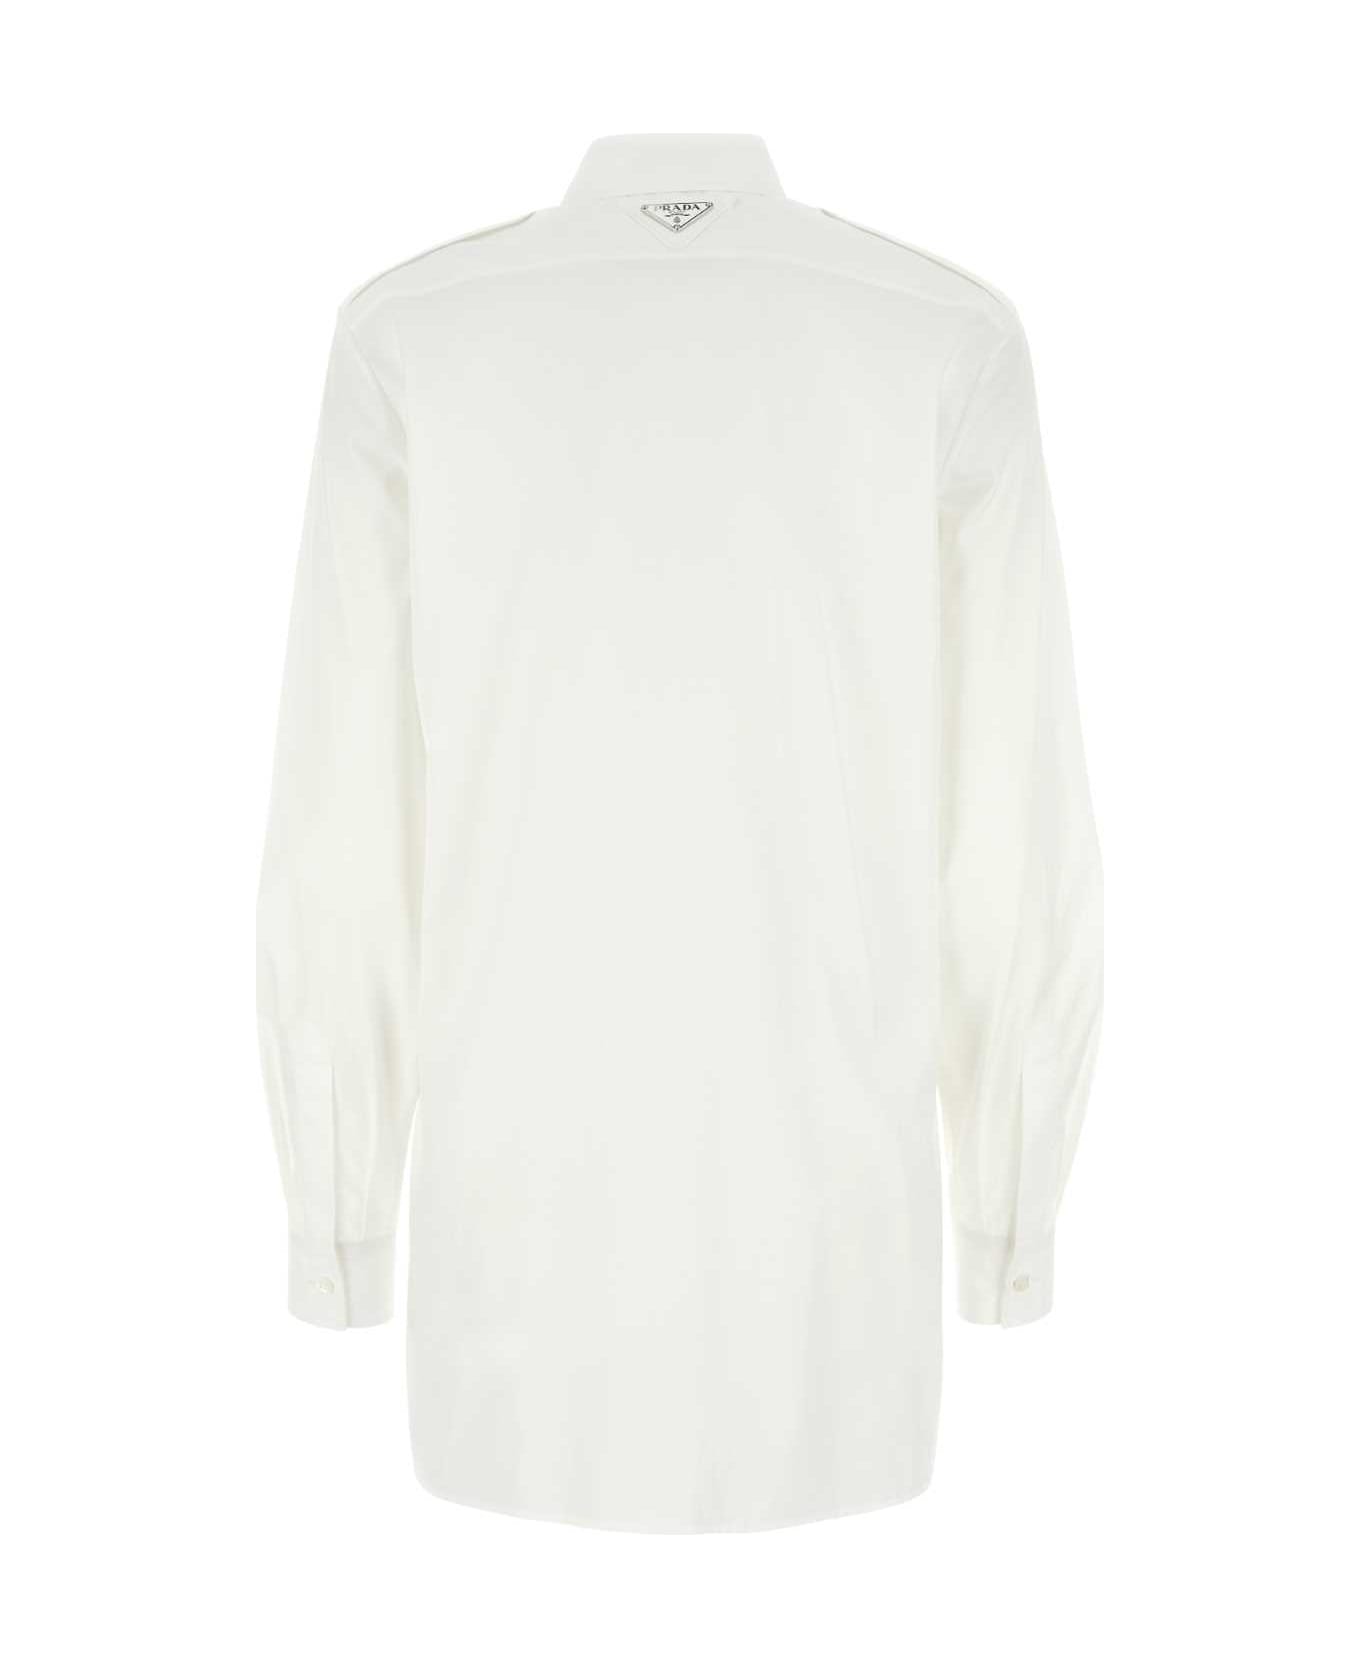 Prada White Poplin Shirt - White シャツ